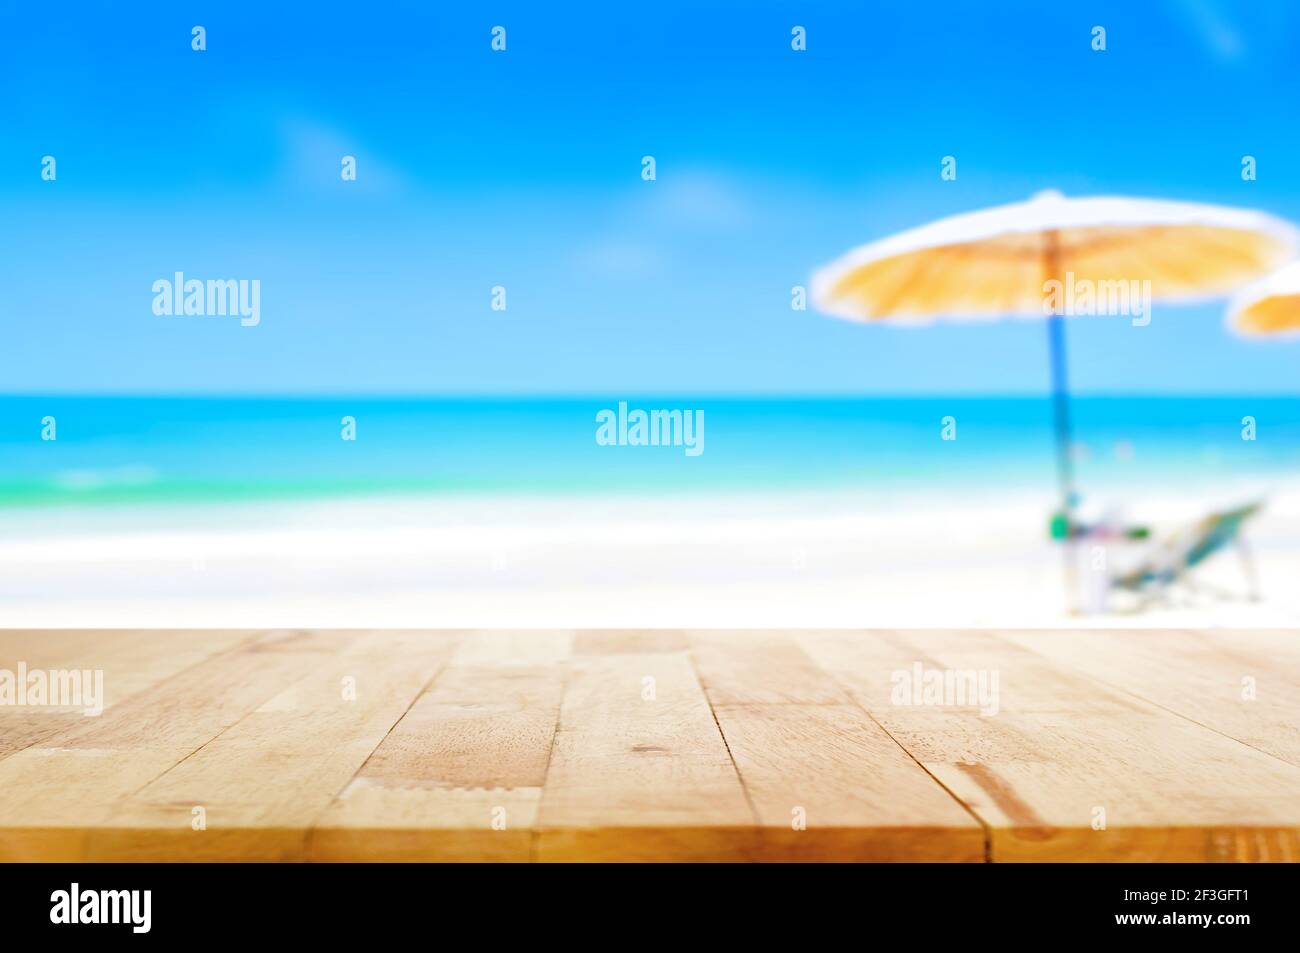 Holztischplatte auf verschwommenem blauem Meer und weißem Sand Strand Hintergrund - kann für Anzeige oder Montage verwendet werden Ihre Produkte Stockfoto